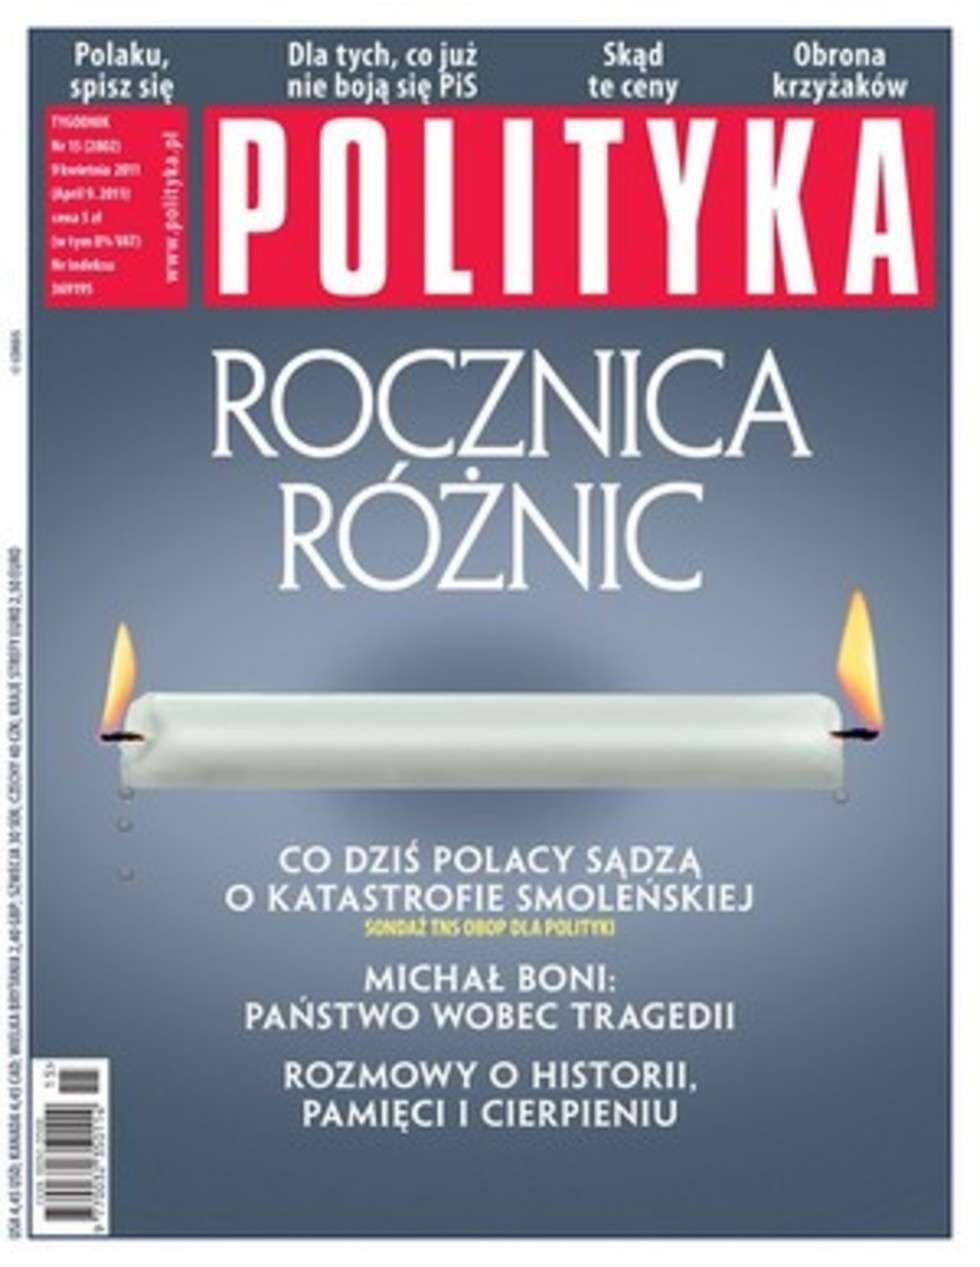  Czasopisma opinii II miejsce: "Polityka" nr 15/2011